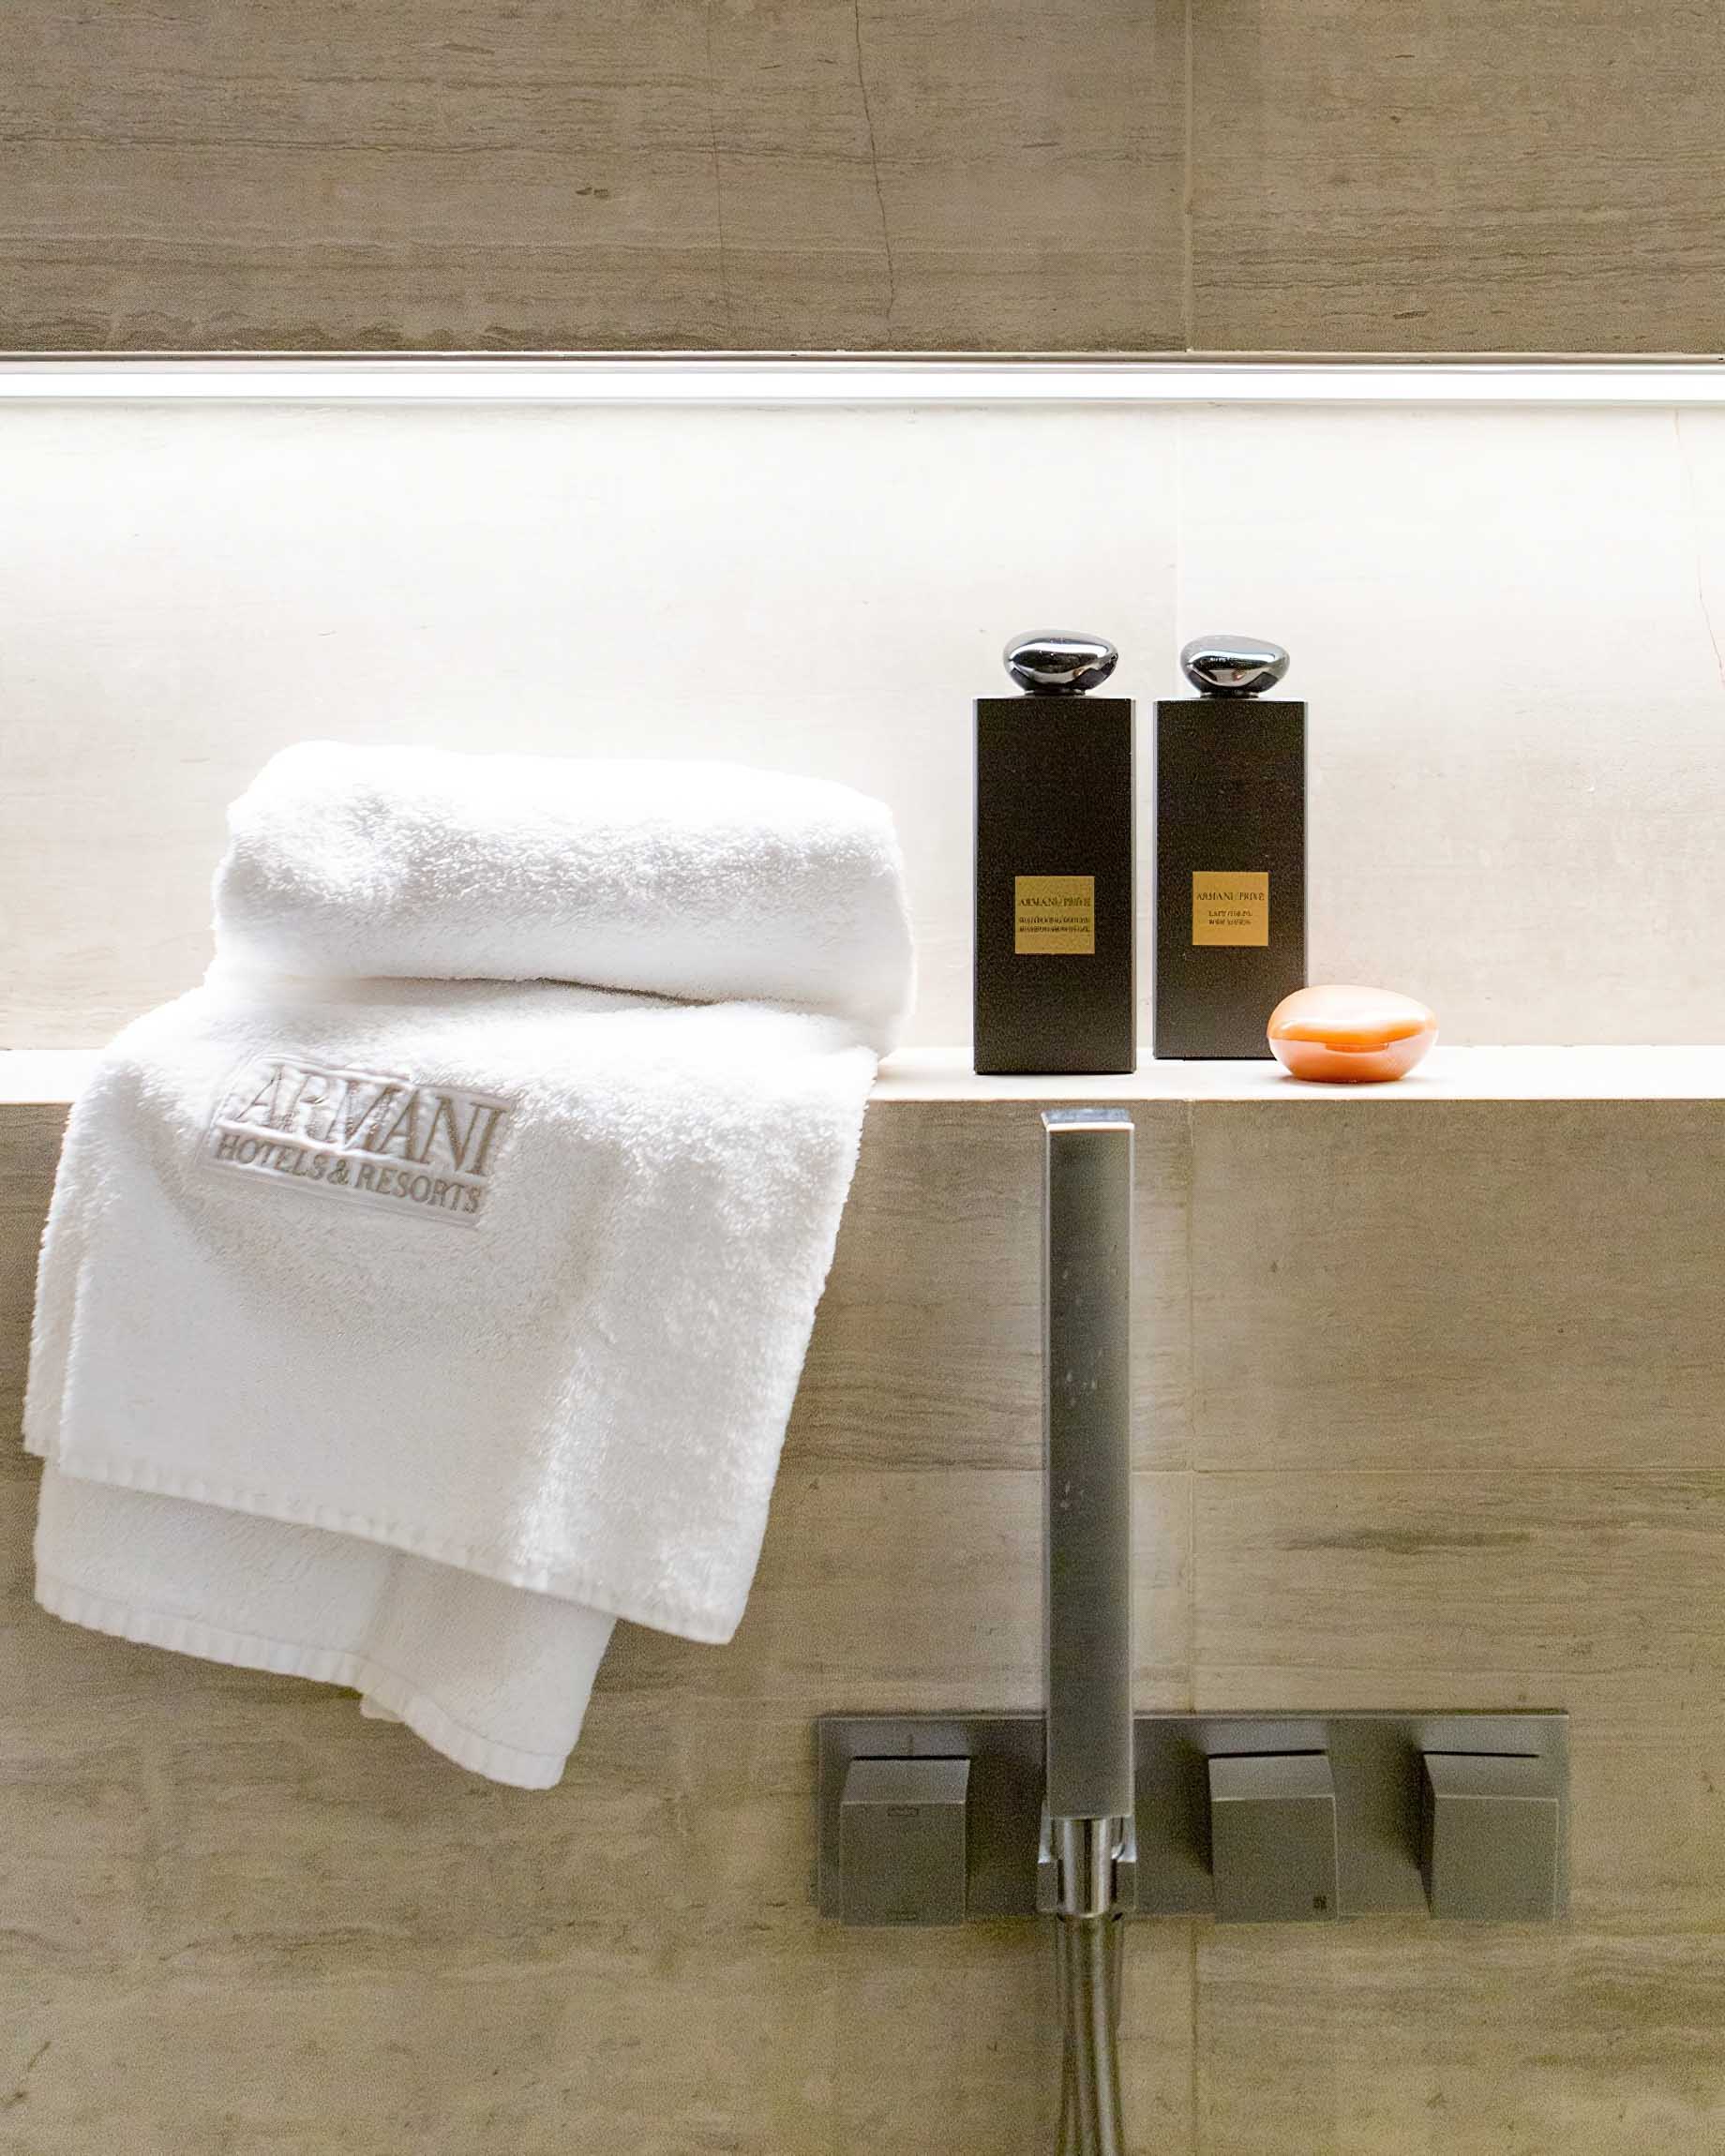 032 – Armani Hotel Milano – Milan, Italy – Armani Suite Bathroom Shower